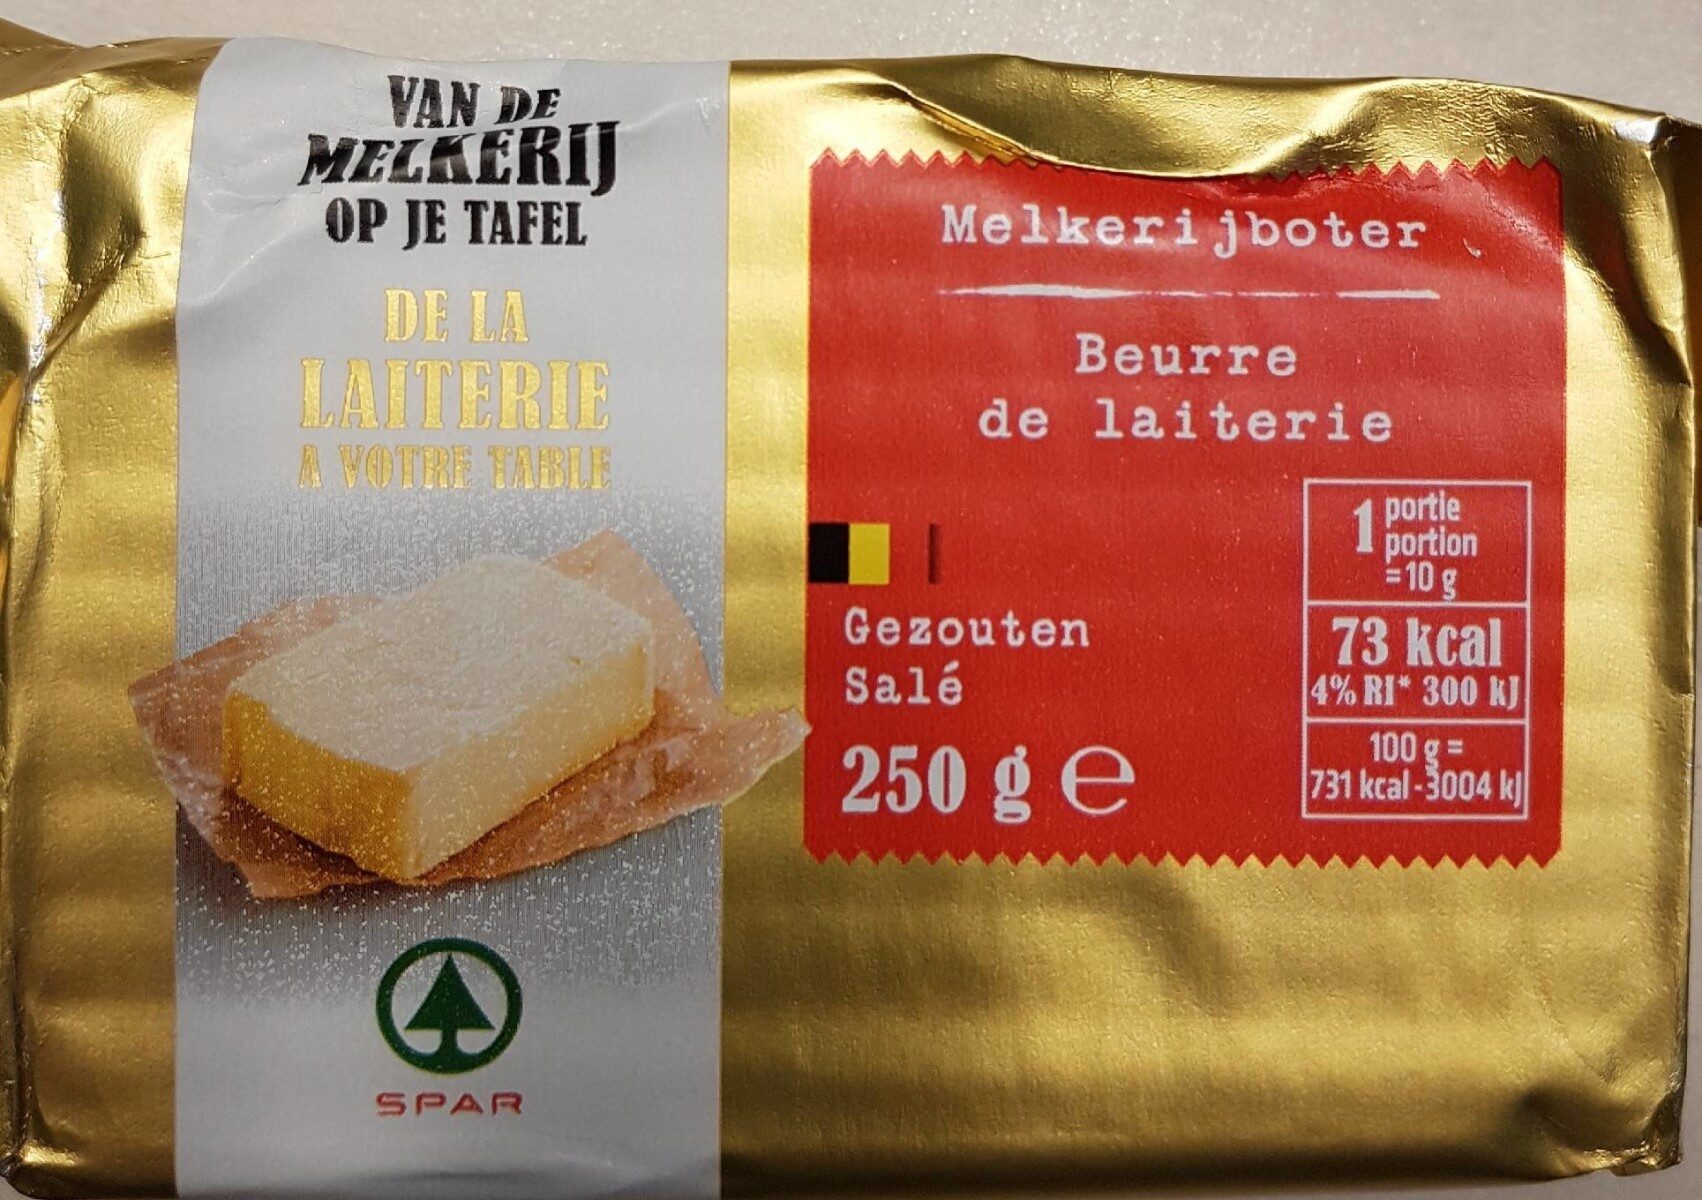 Beurre de laiterie - Product - fr